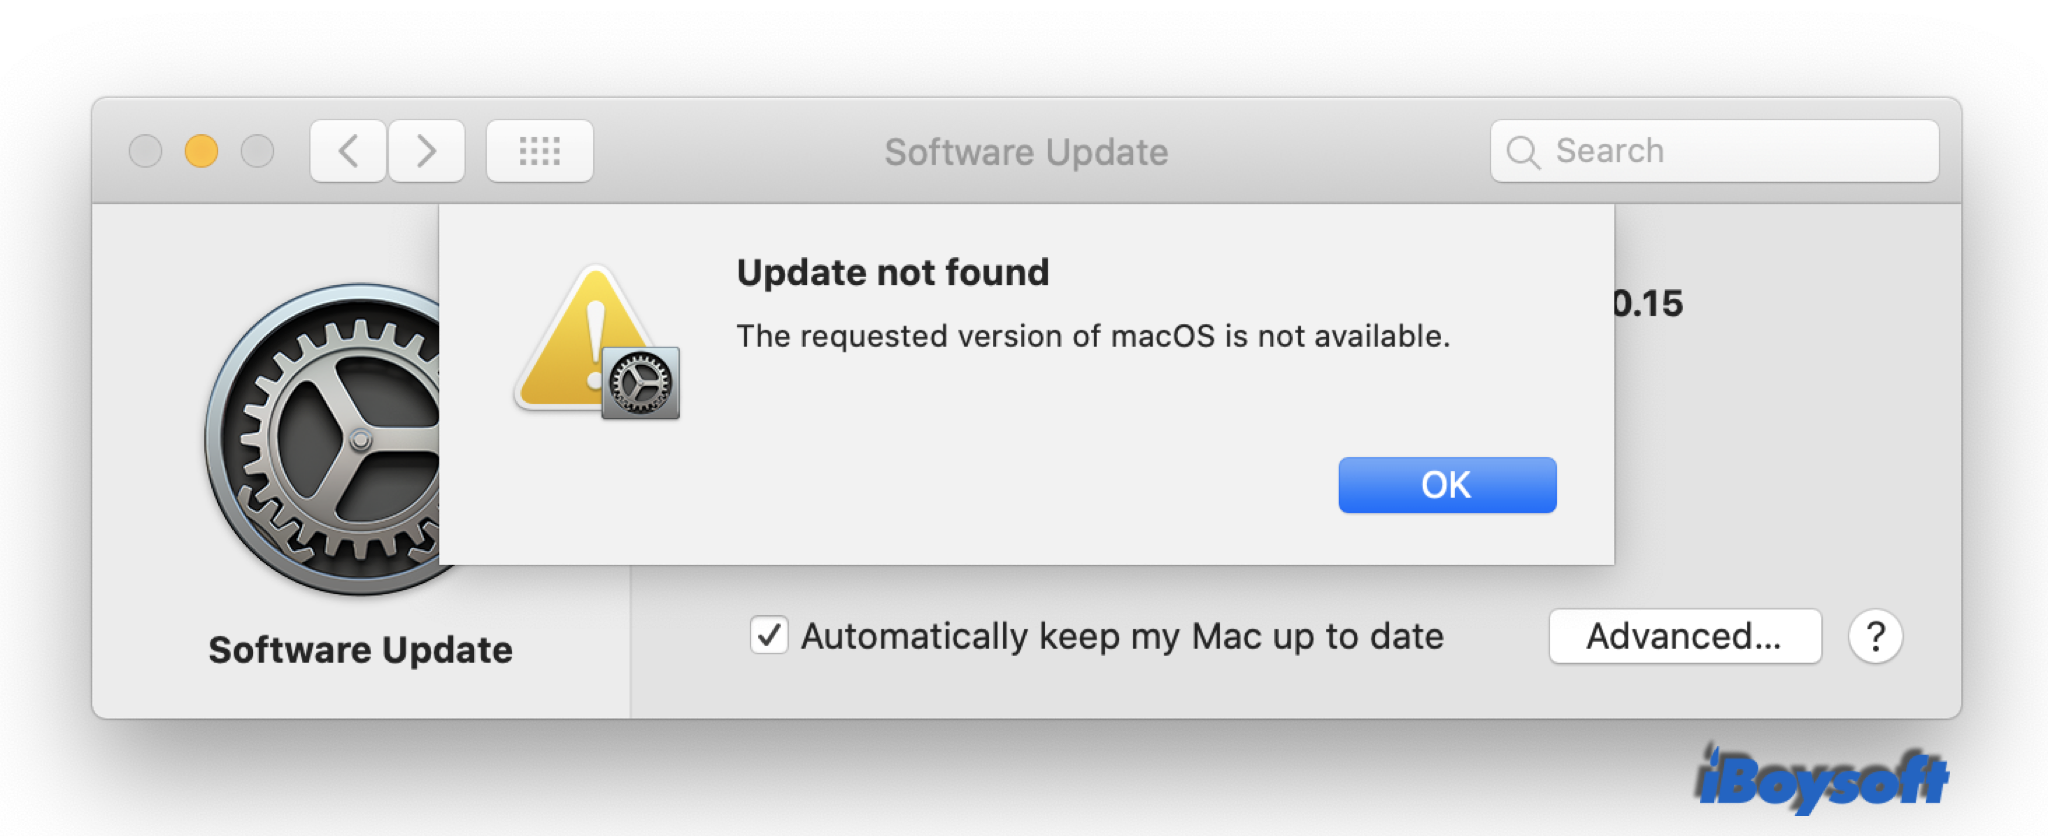 La version demandée de macOS n'est pas disponible